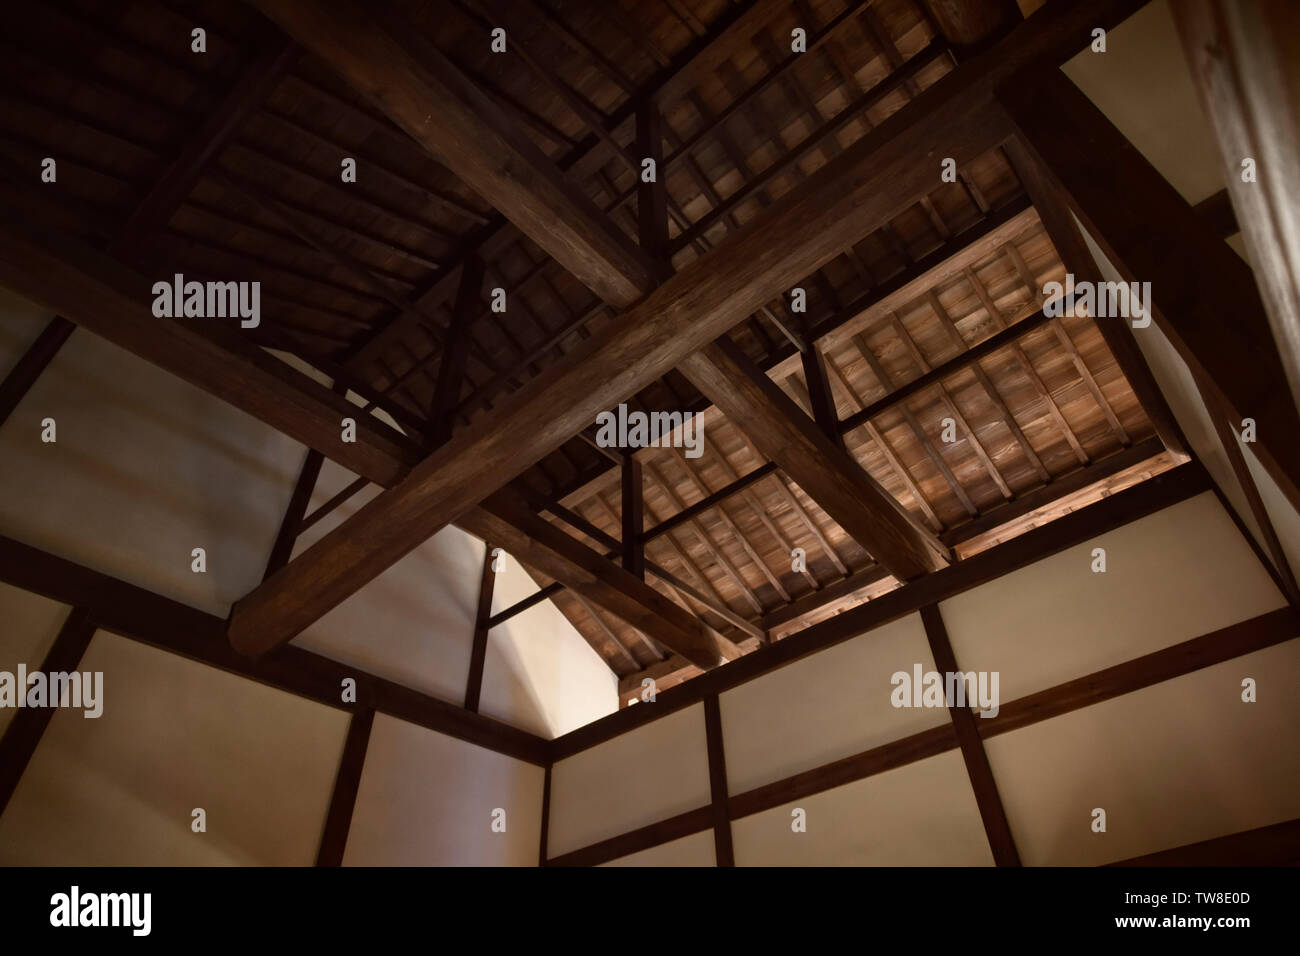 Bâtiment traditionnel japonais de la période Edo, d'architecture d'intérieur closeup détail de la toiture en bois apparentes et les articulations fire traités avec Shou Sugi Ban Banque D'Images